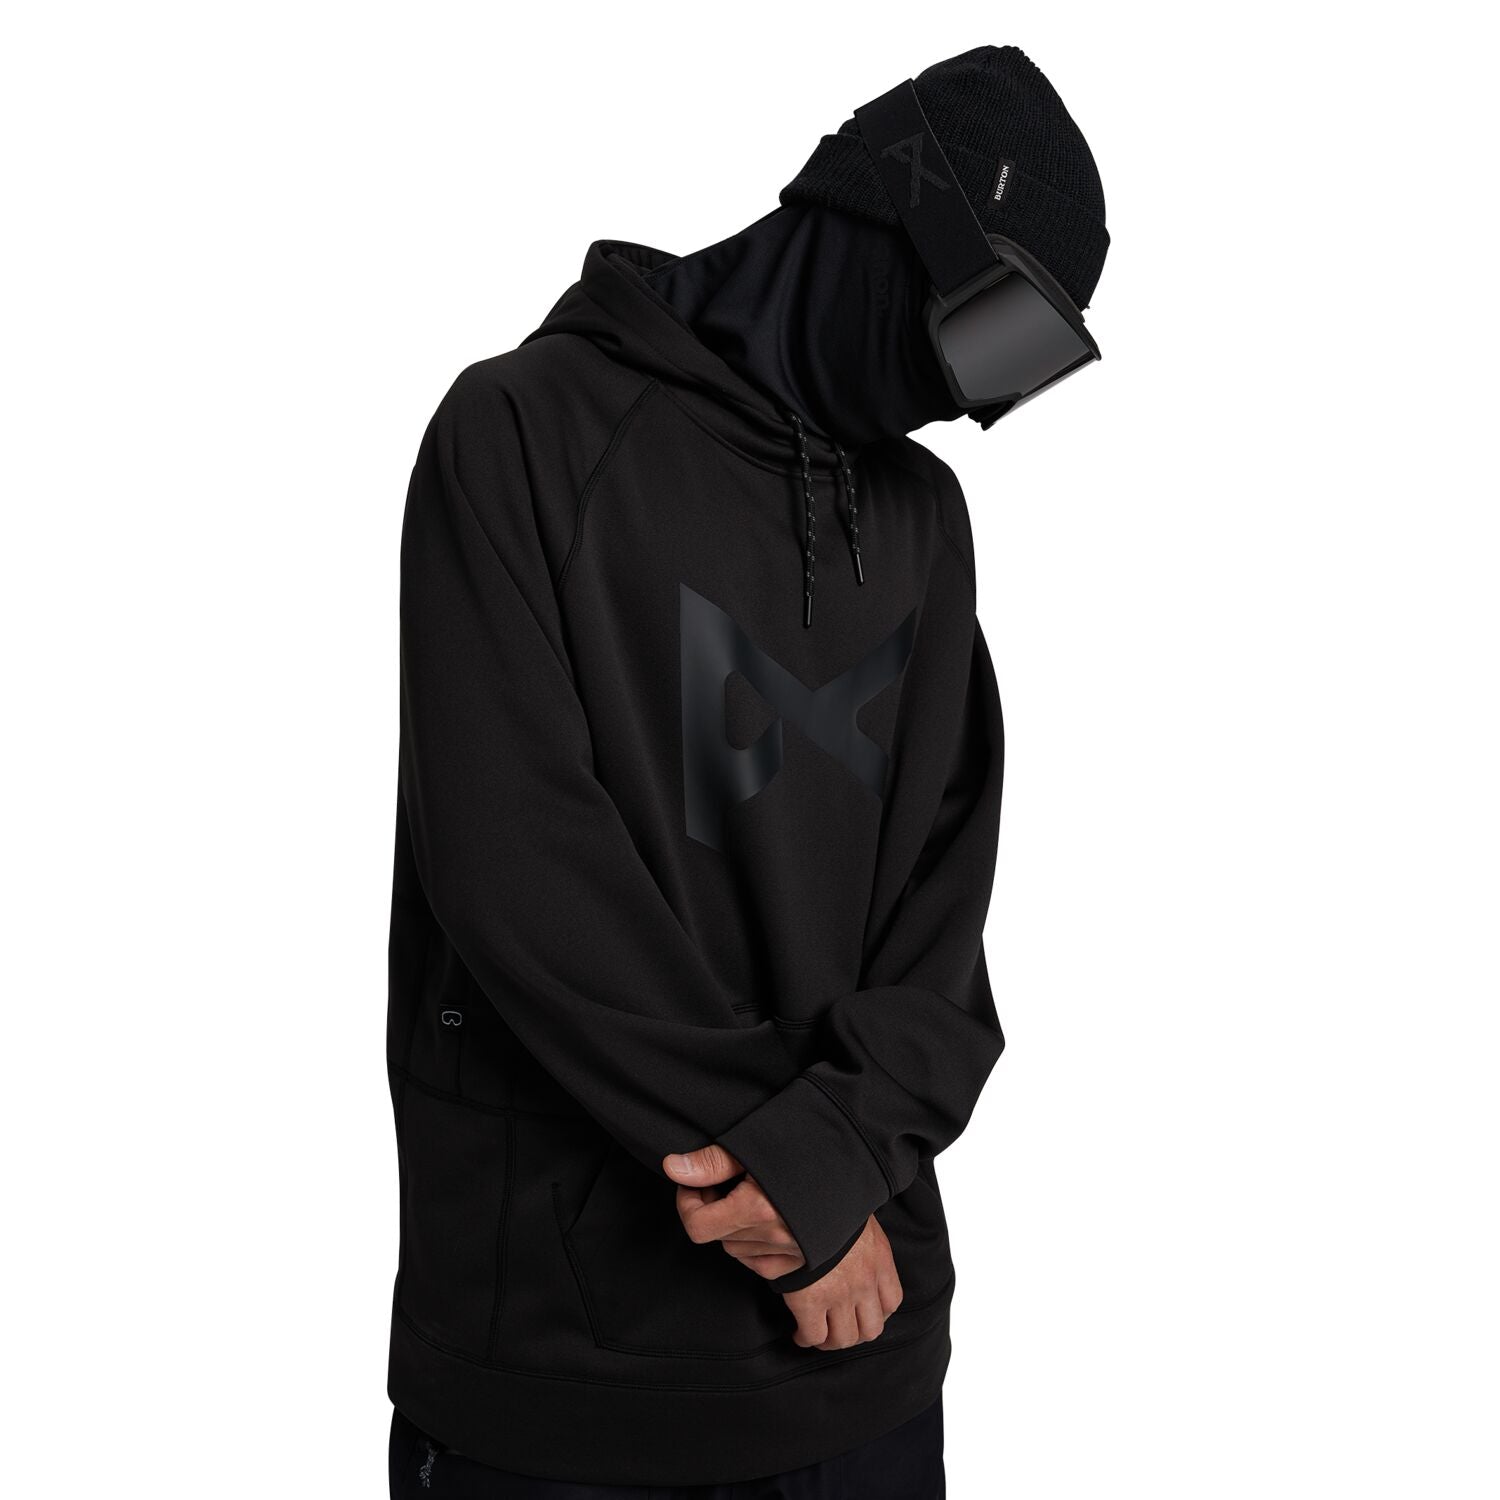 Anon MFI Pullover Hoodie Black Sweatshirts & Hoodies